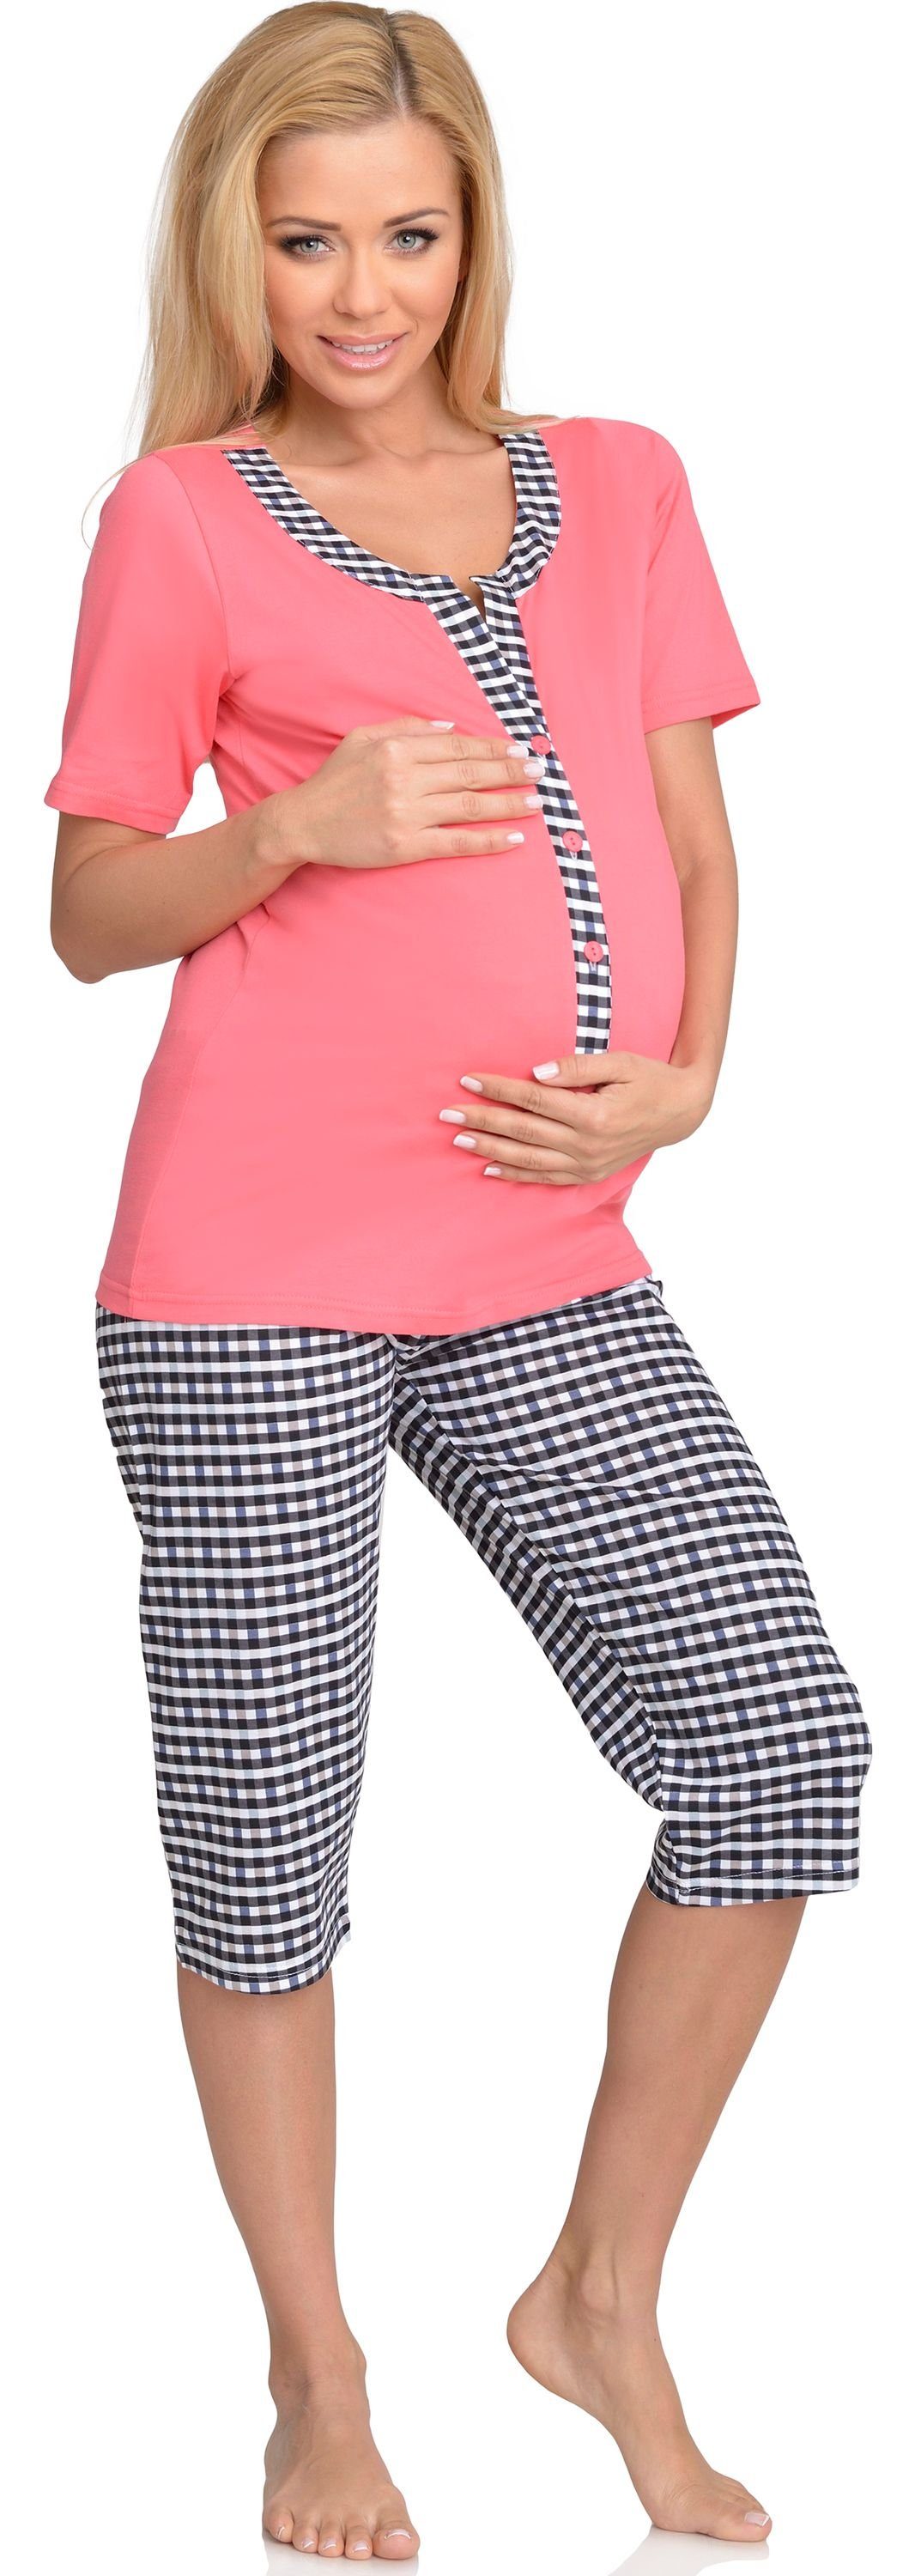 Be Mammy Umstandspyjama Damen Schlafanzug Stillpyjama Coral-1 H2L2N2